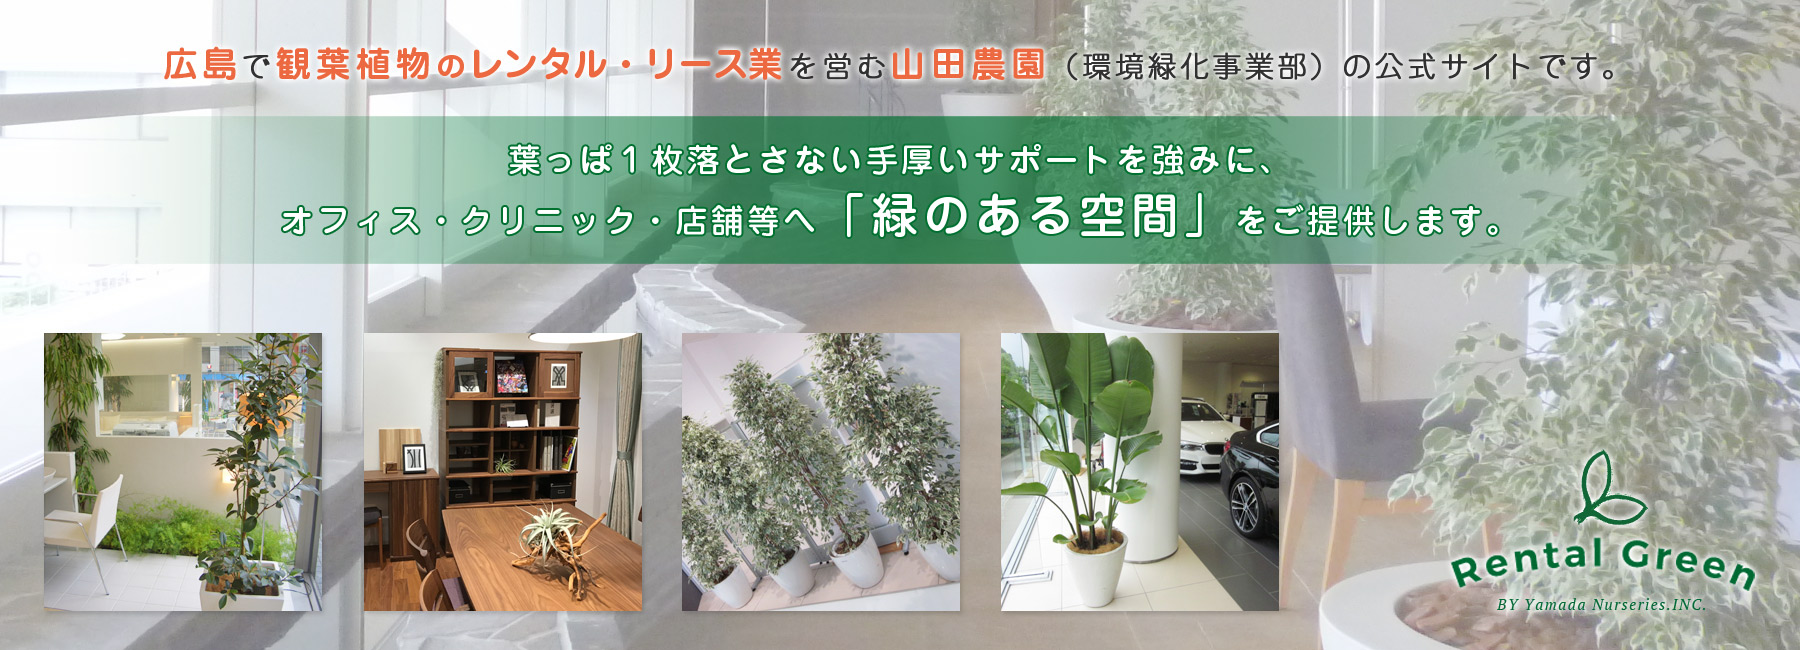  » 広島で観葉植物の植え替えを考えられている法人様にリフレッシュグリーン【お祝い植物などのお困り】